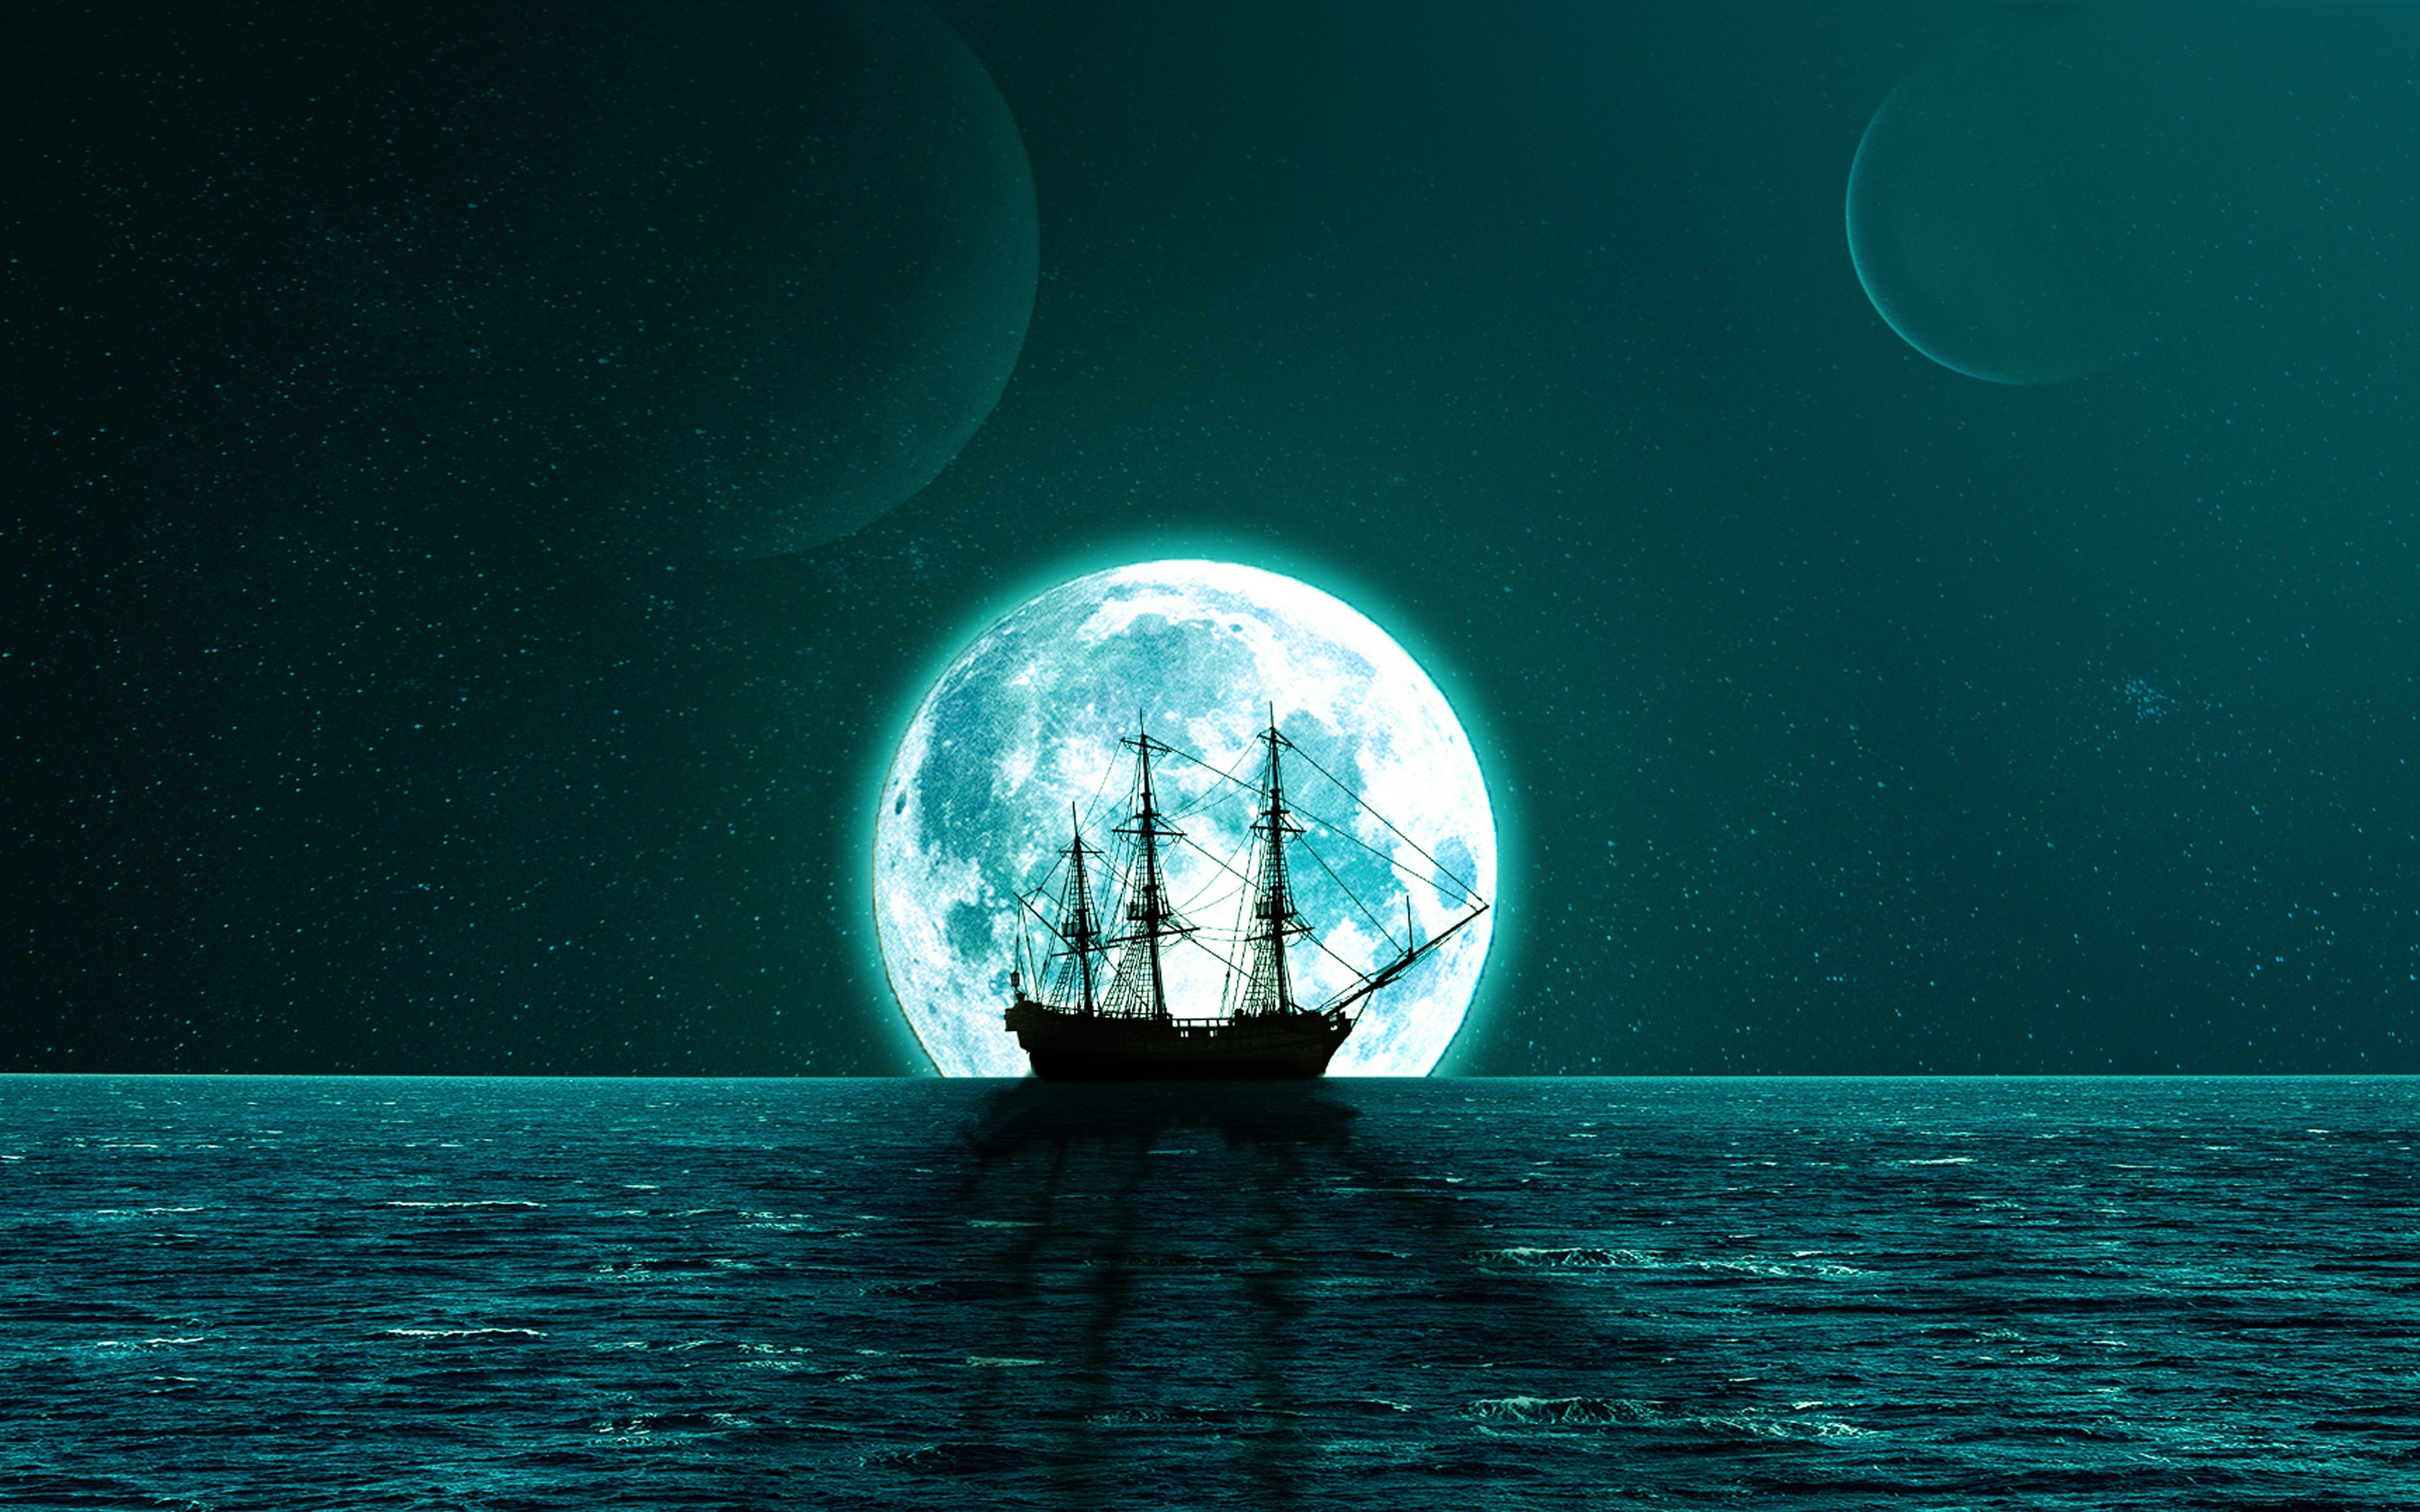 ダウンロード画像 帆船のシルエット 4k ブルームーン 海 水平線 孤独の概念 夜の風景 帆船 クローバーの刺青 なんかして 画面の解像度 3840x2400 壁紙デスクトップ上